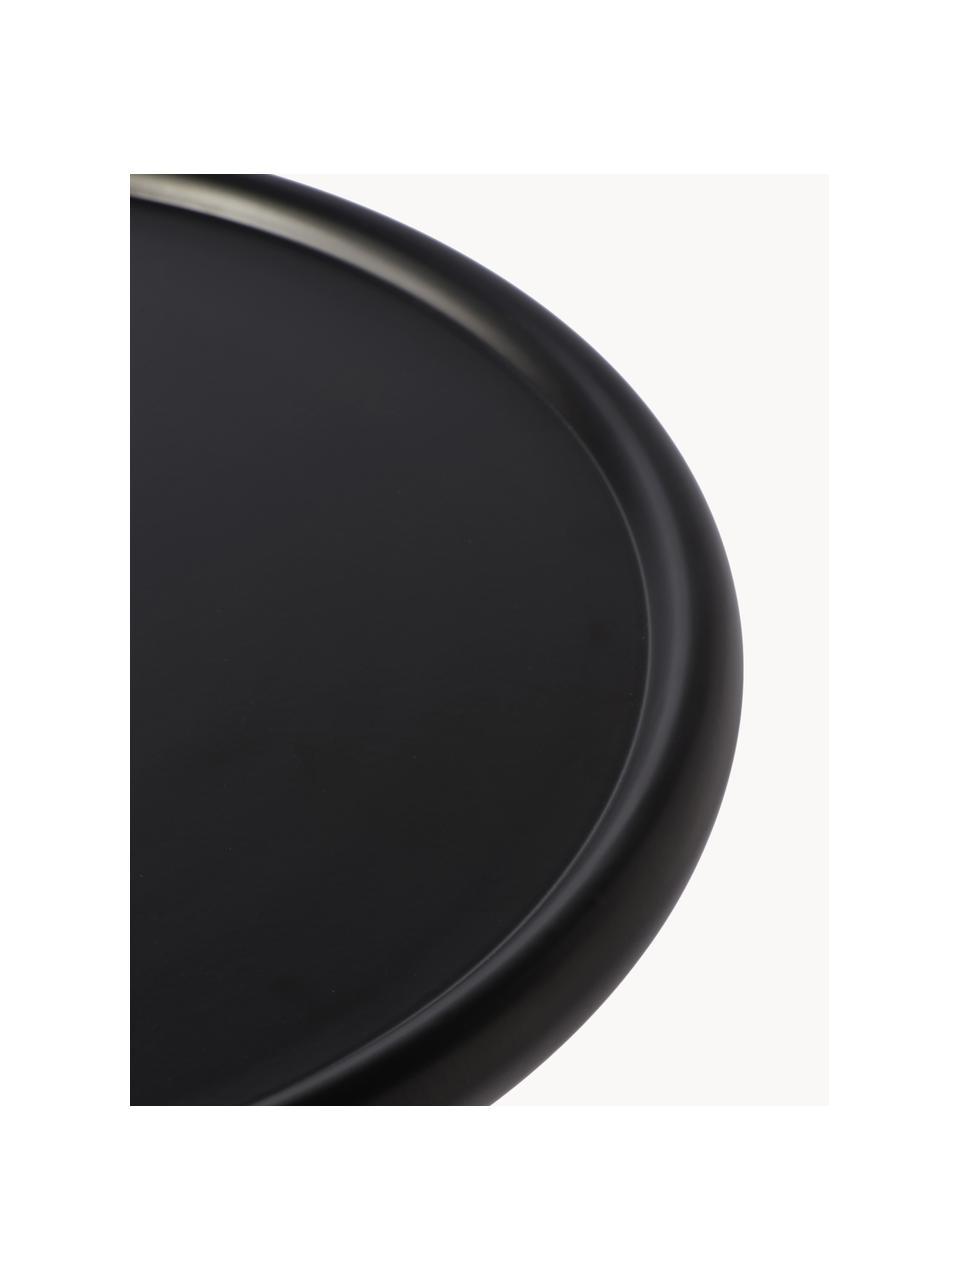 Table d'appoint ronde Twister, Aluminium, revêtement par poudre, Noir, Ø 46 x haut. 56 cm